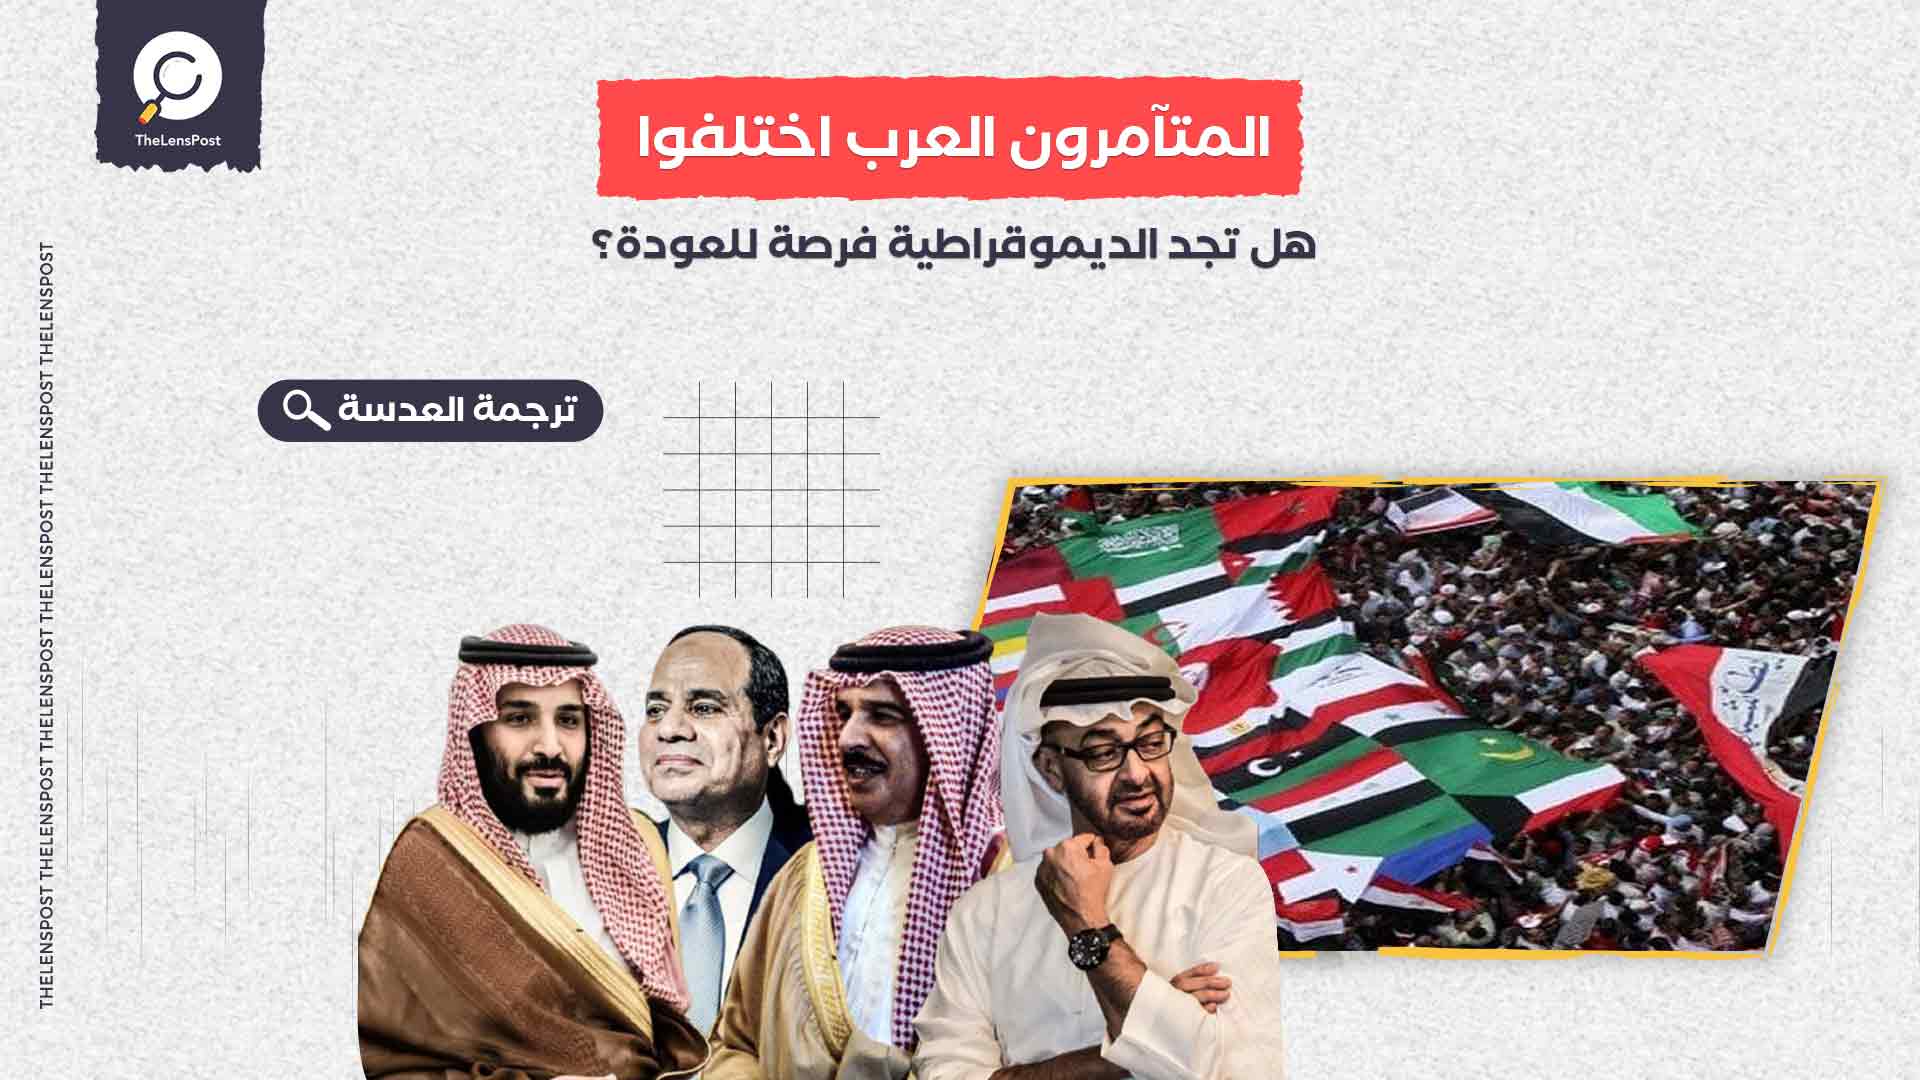  المتآمرون العرب اختلفوا .... هل تجد الديموقراطية فرصة للعودة؟